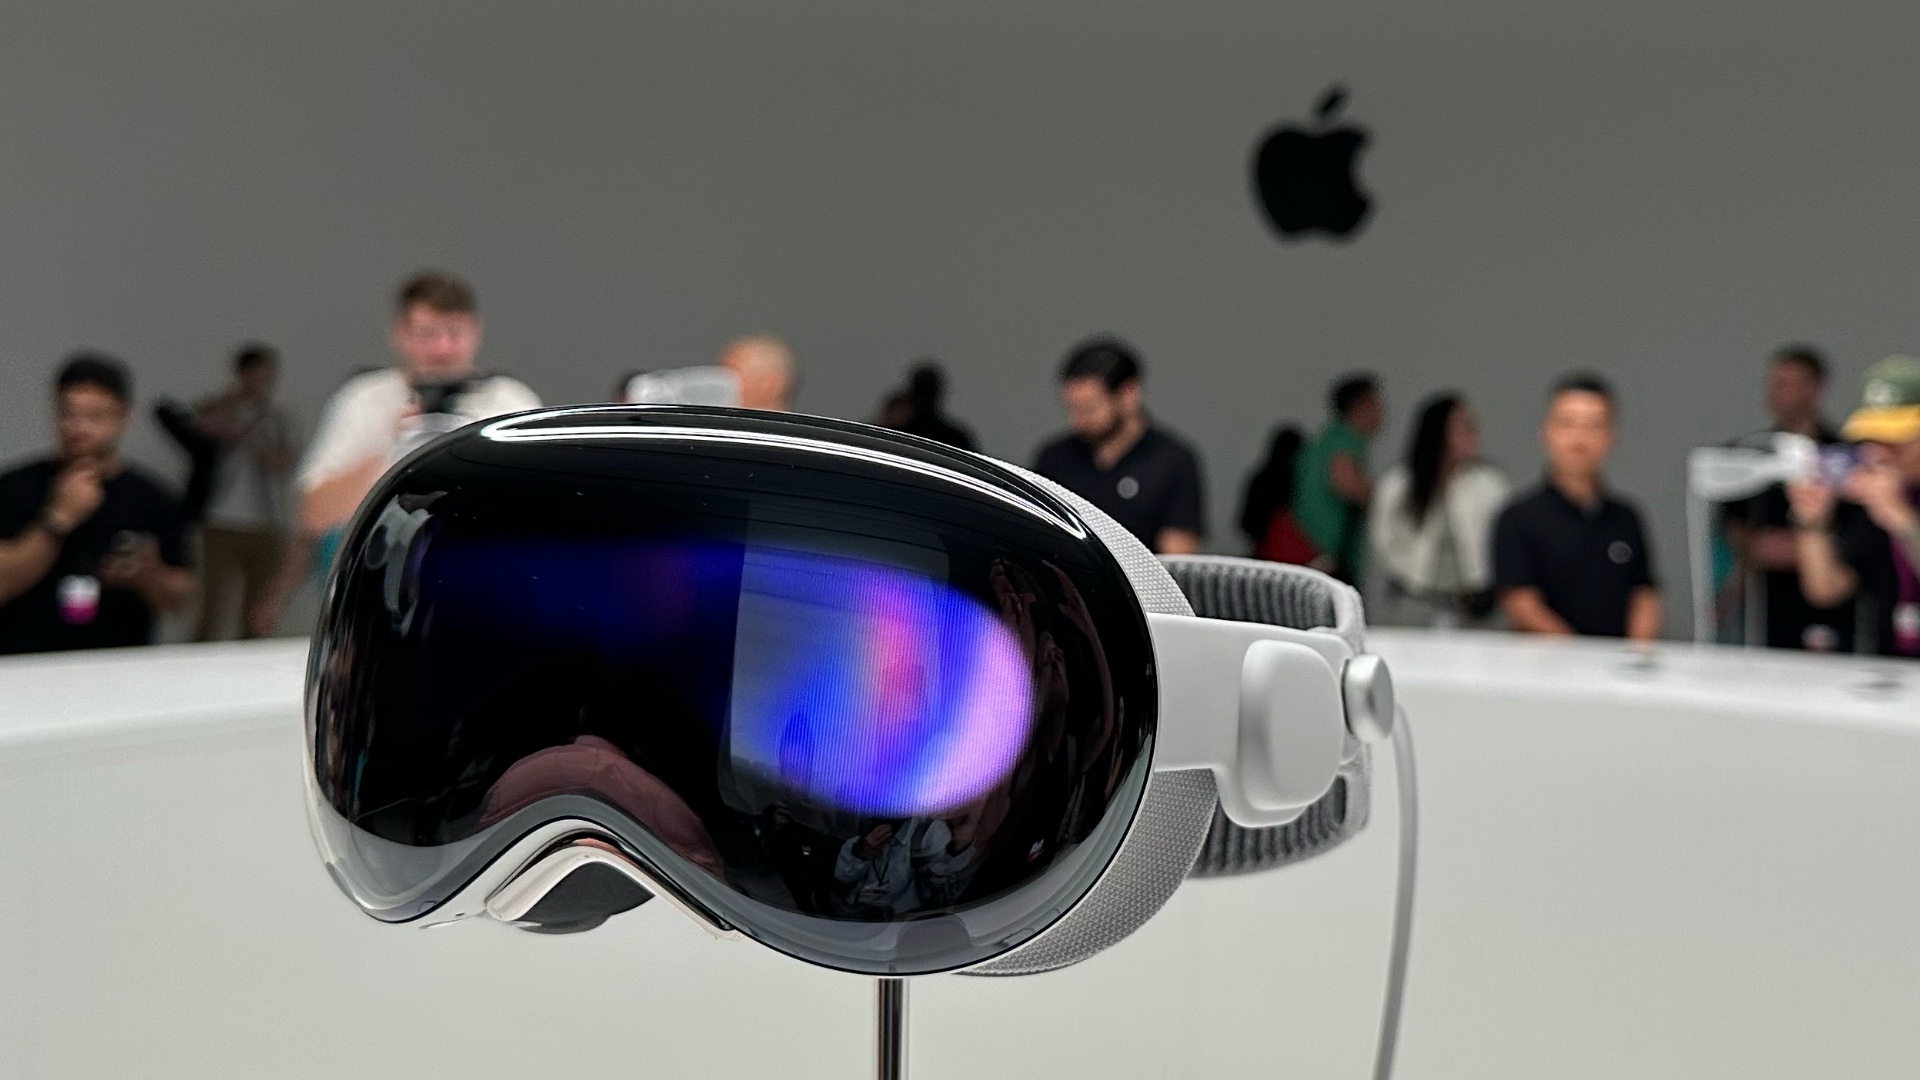 Réalité virtuelle : le pari risqué de Sony avec son nouveau casque